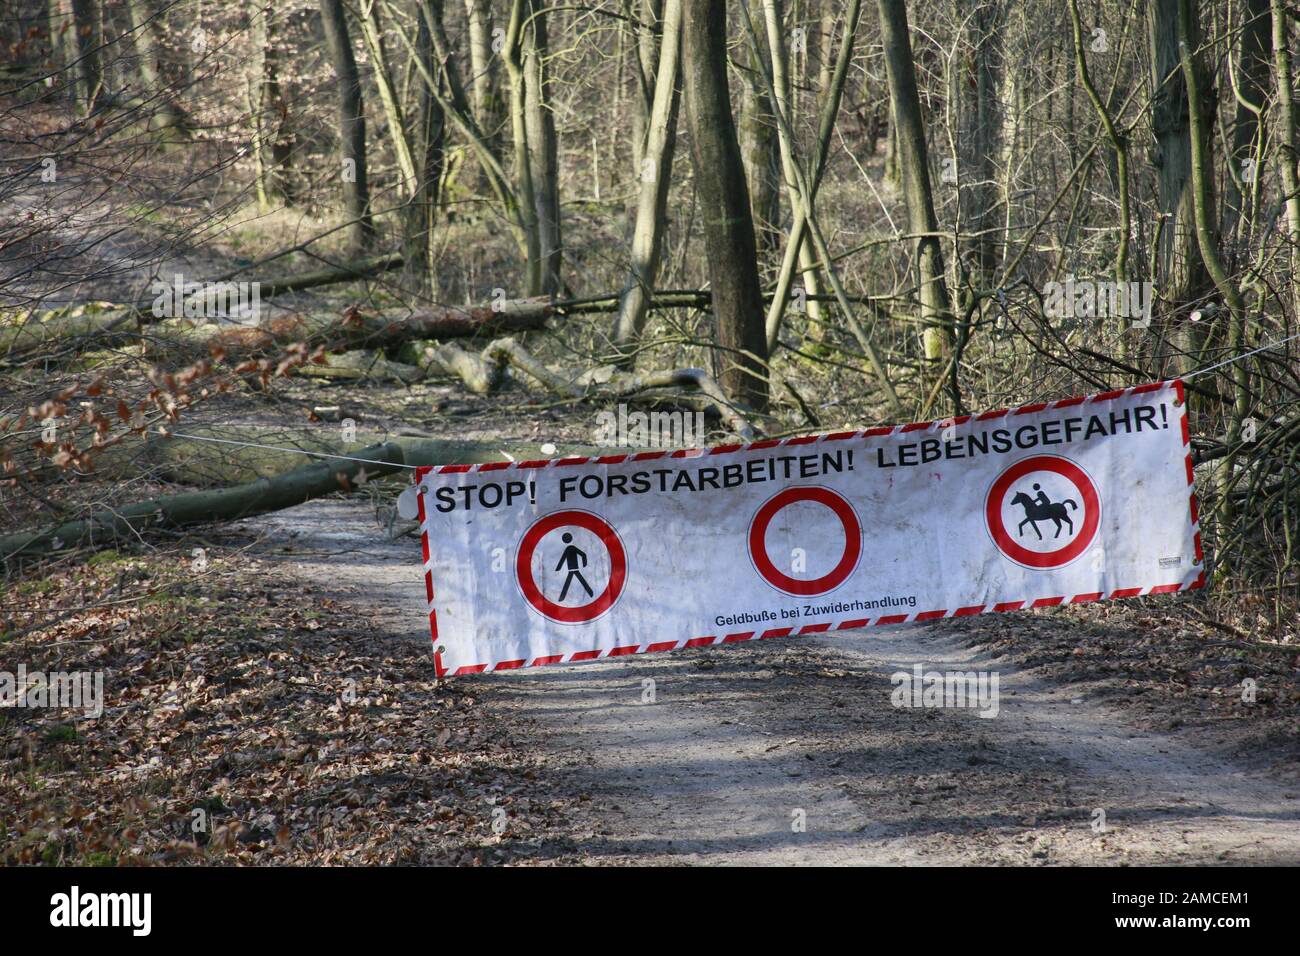 Durchforstung im Naturpark Kottenforst-Ville - Sperrung eines Forstweges, Brühl, Nordrhein-Westfalen, Deutschland Stock Photo